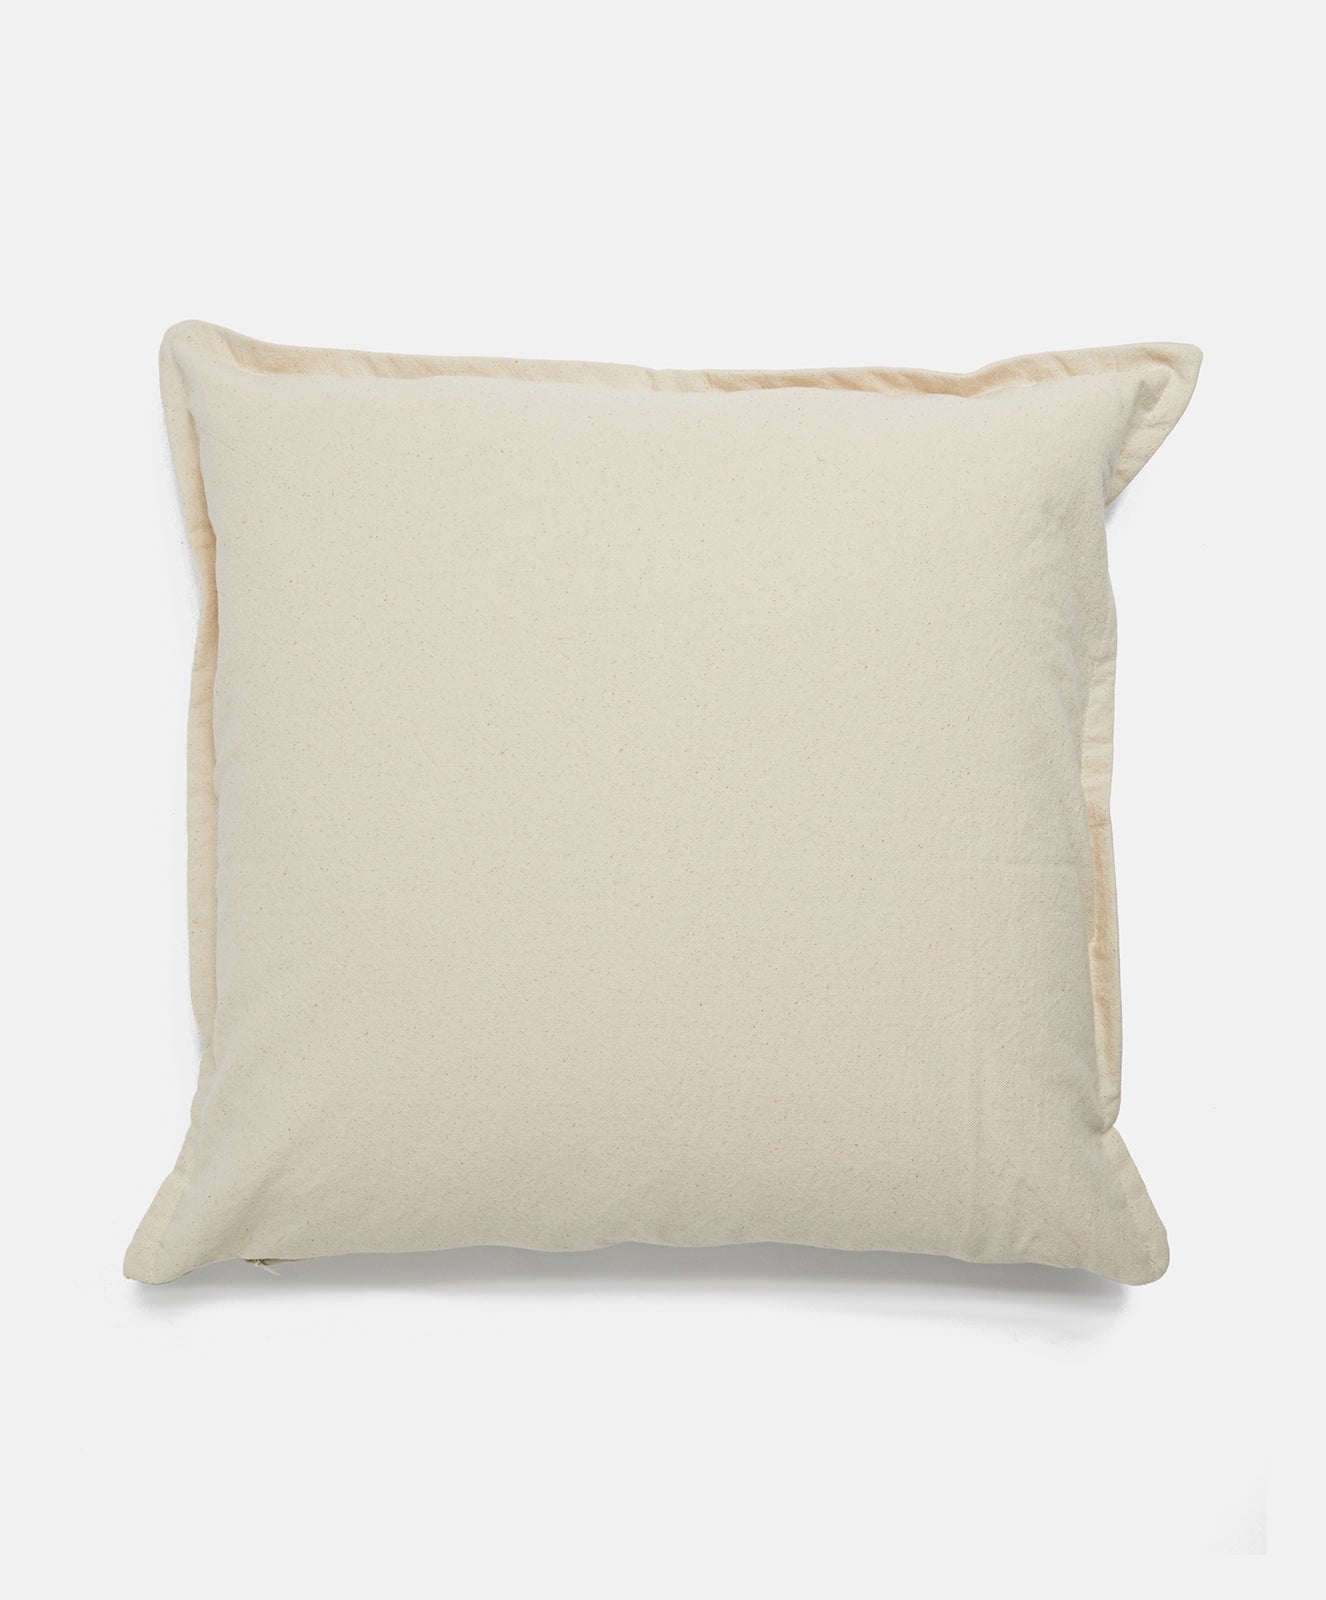 Wanderful Cushion | Golden Tan / Natural Stripe